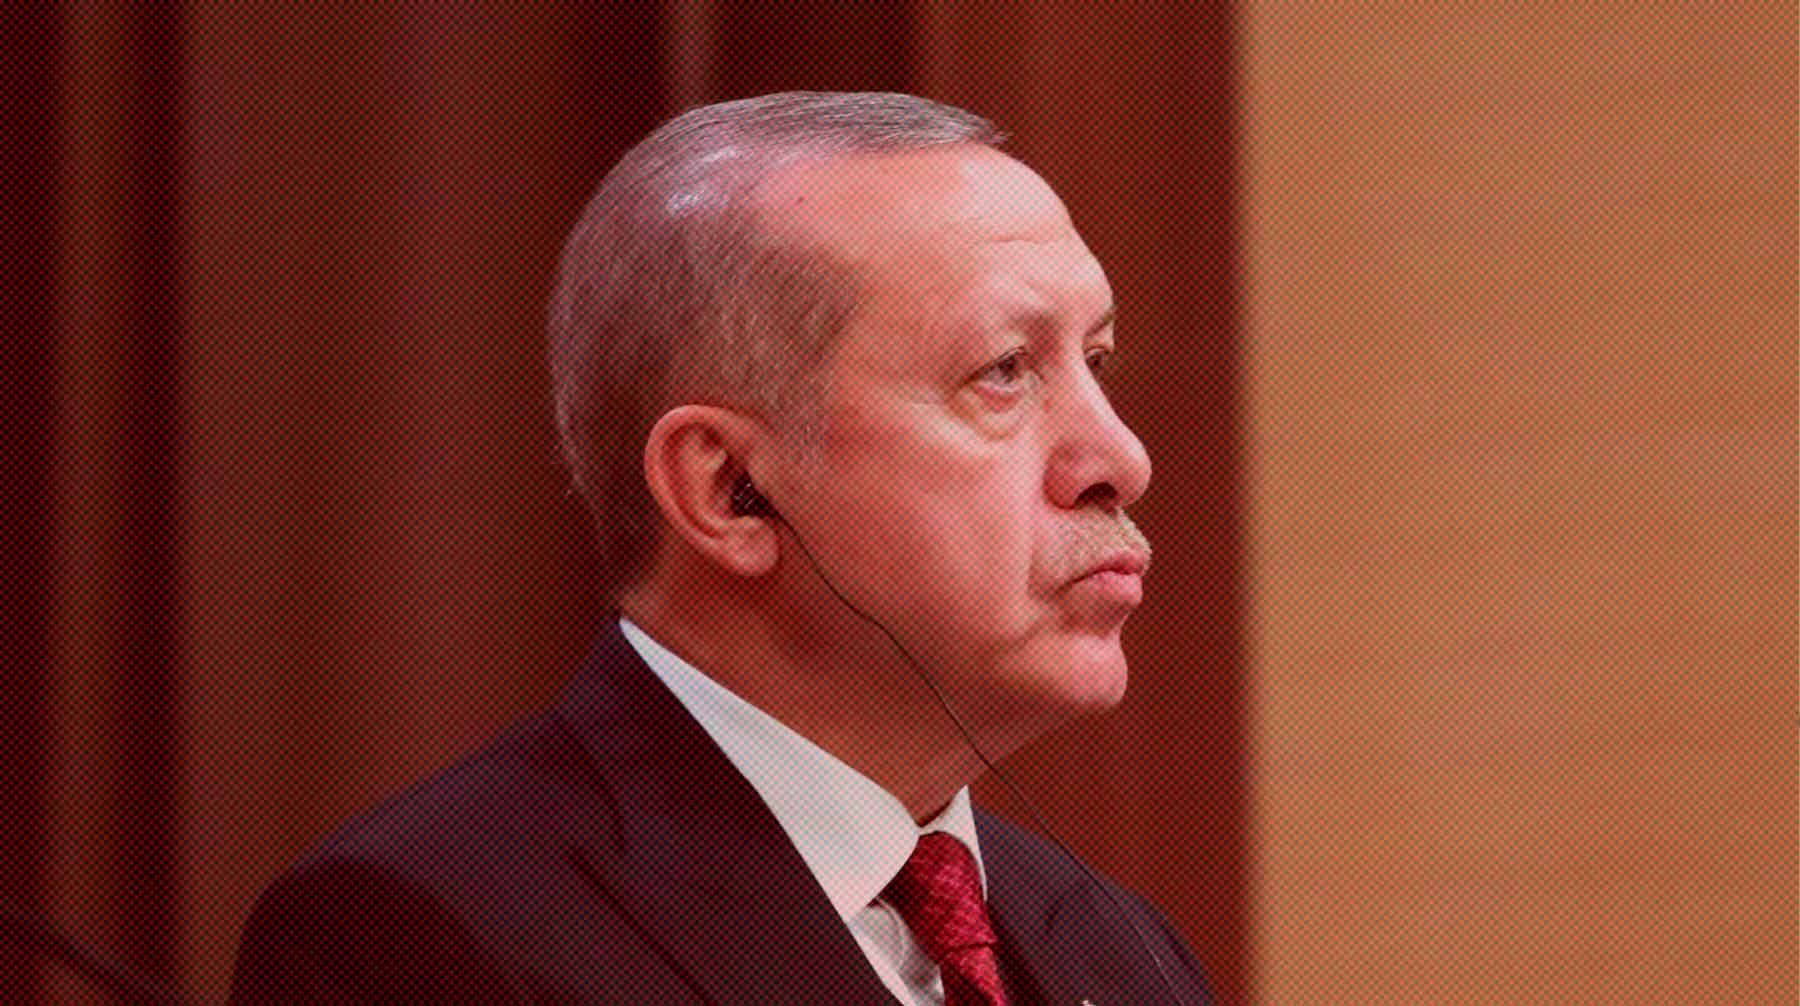 Dailystorm - Станет ли Эрдоган закручивать гайки? Политологи Минченко и Образцов предсказали нелегкие времена для оппозиции в Турции